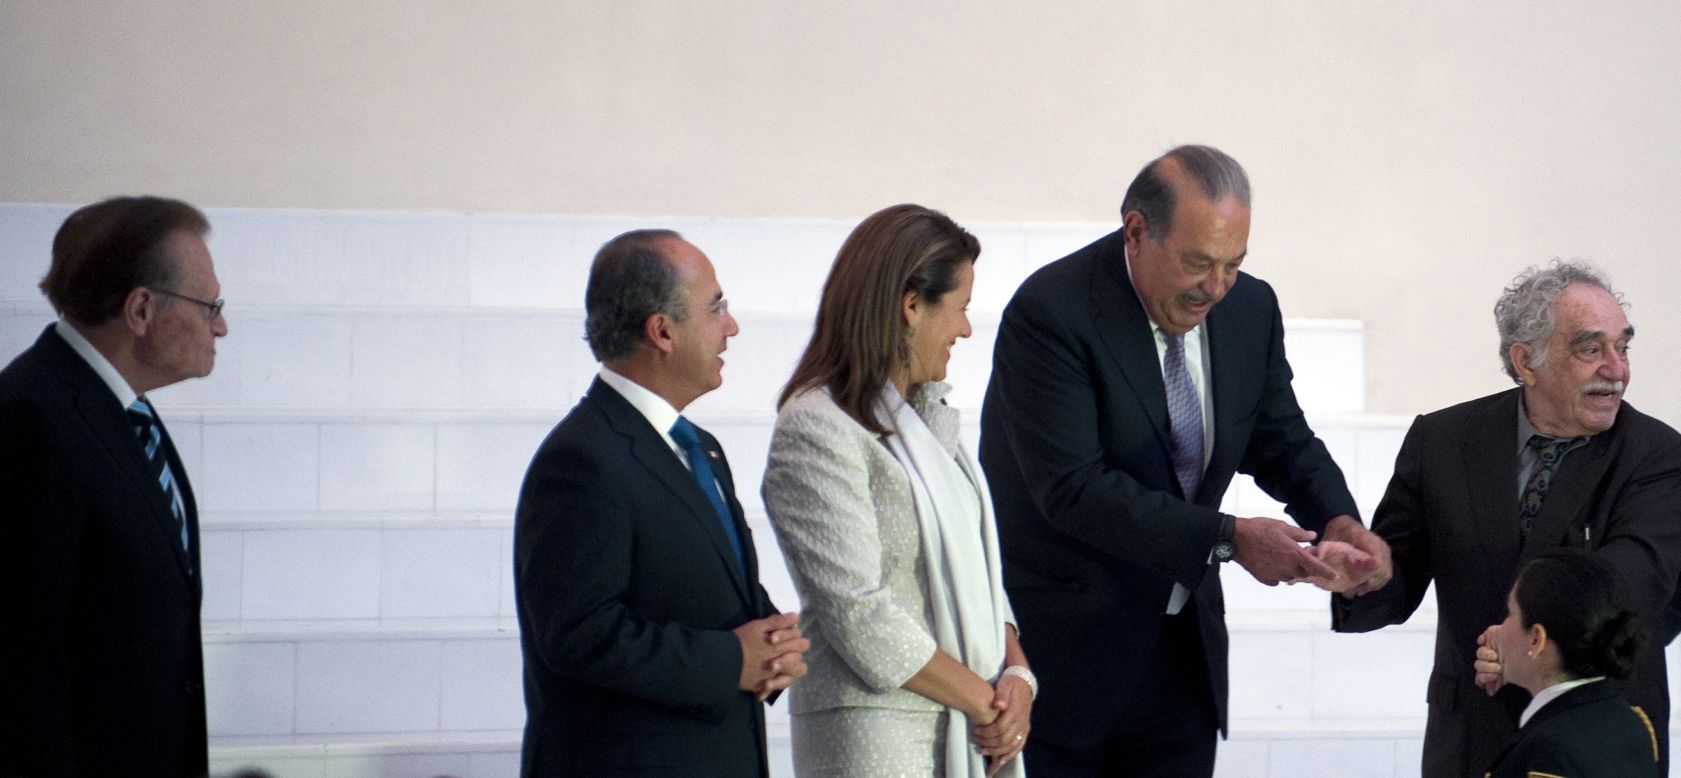 Gabo junto a de izq. a der.: Larry King, el ex presidente mexicano Felipe Calderón, Margarita Zavala de Calderón, y el magnate de los medios Carlos Slim. Ciudad de México, 1 de marzo de 2011.